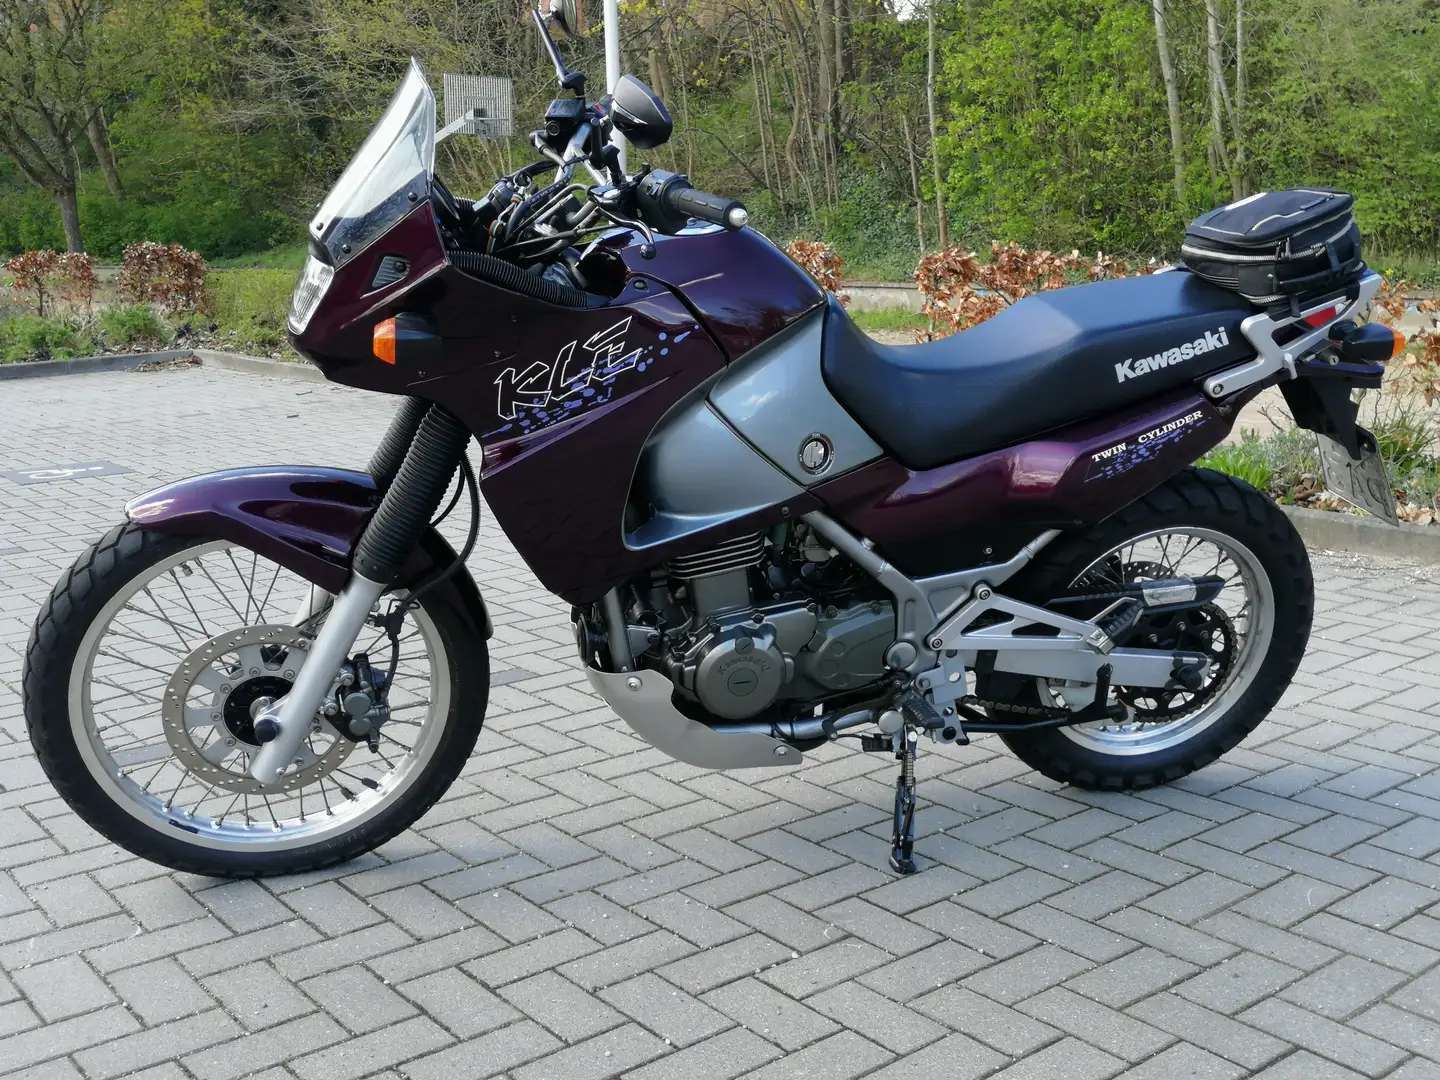 Kawasaki KLE 500 - 1